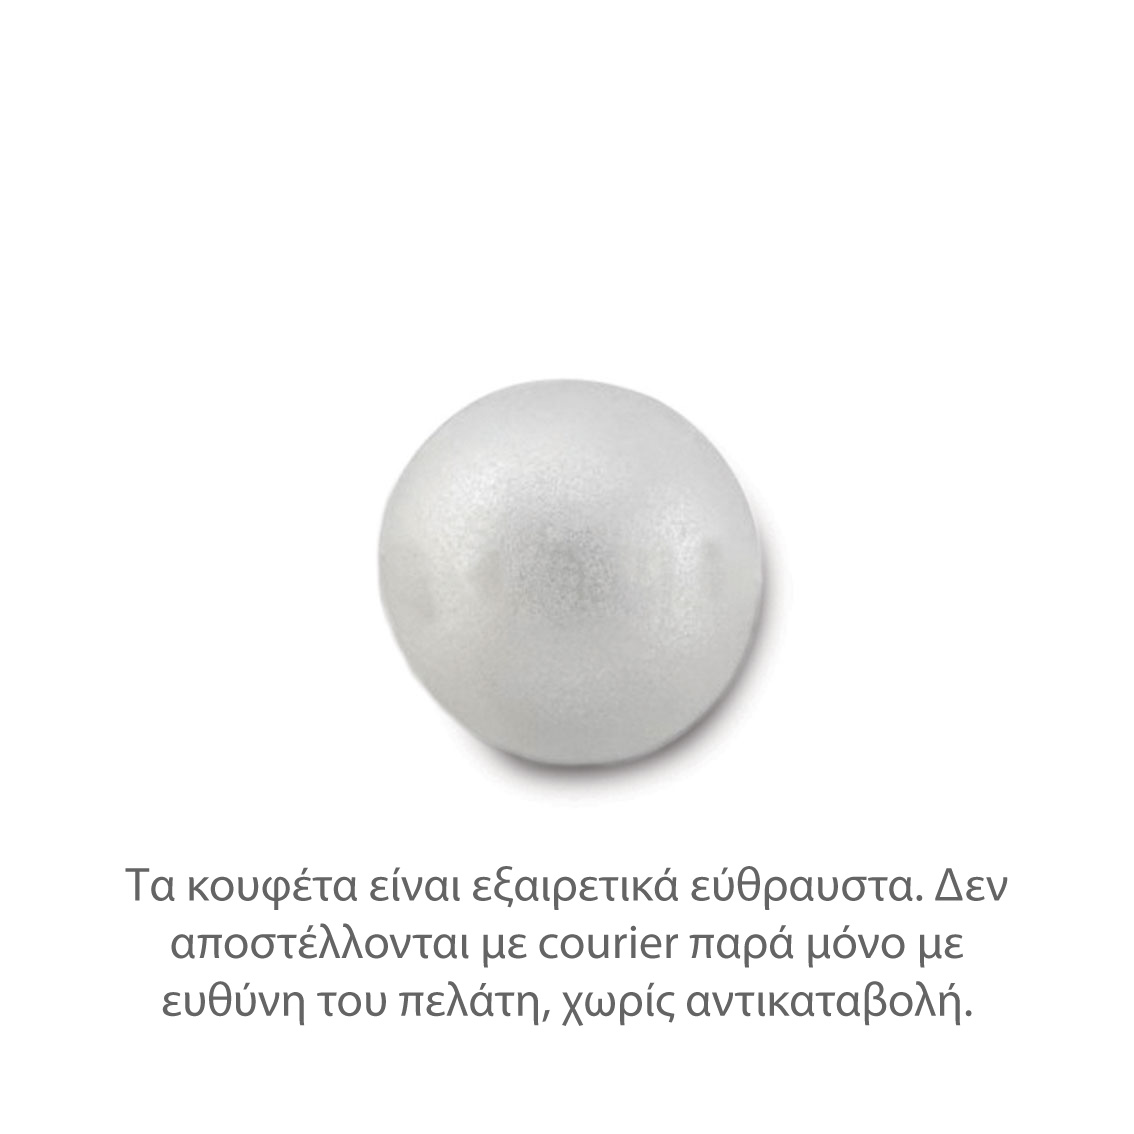 Κουφέτα Crispys λευκό περλέ 800γρ Zaxaropolis